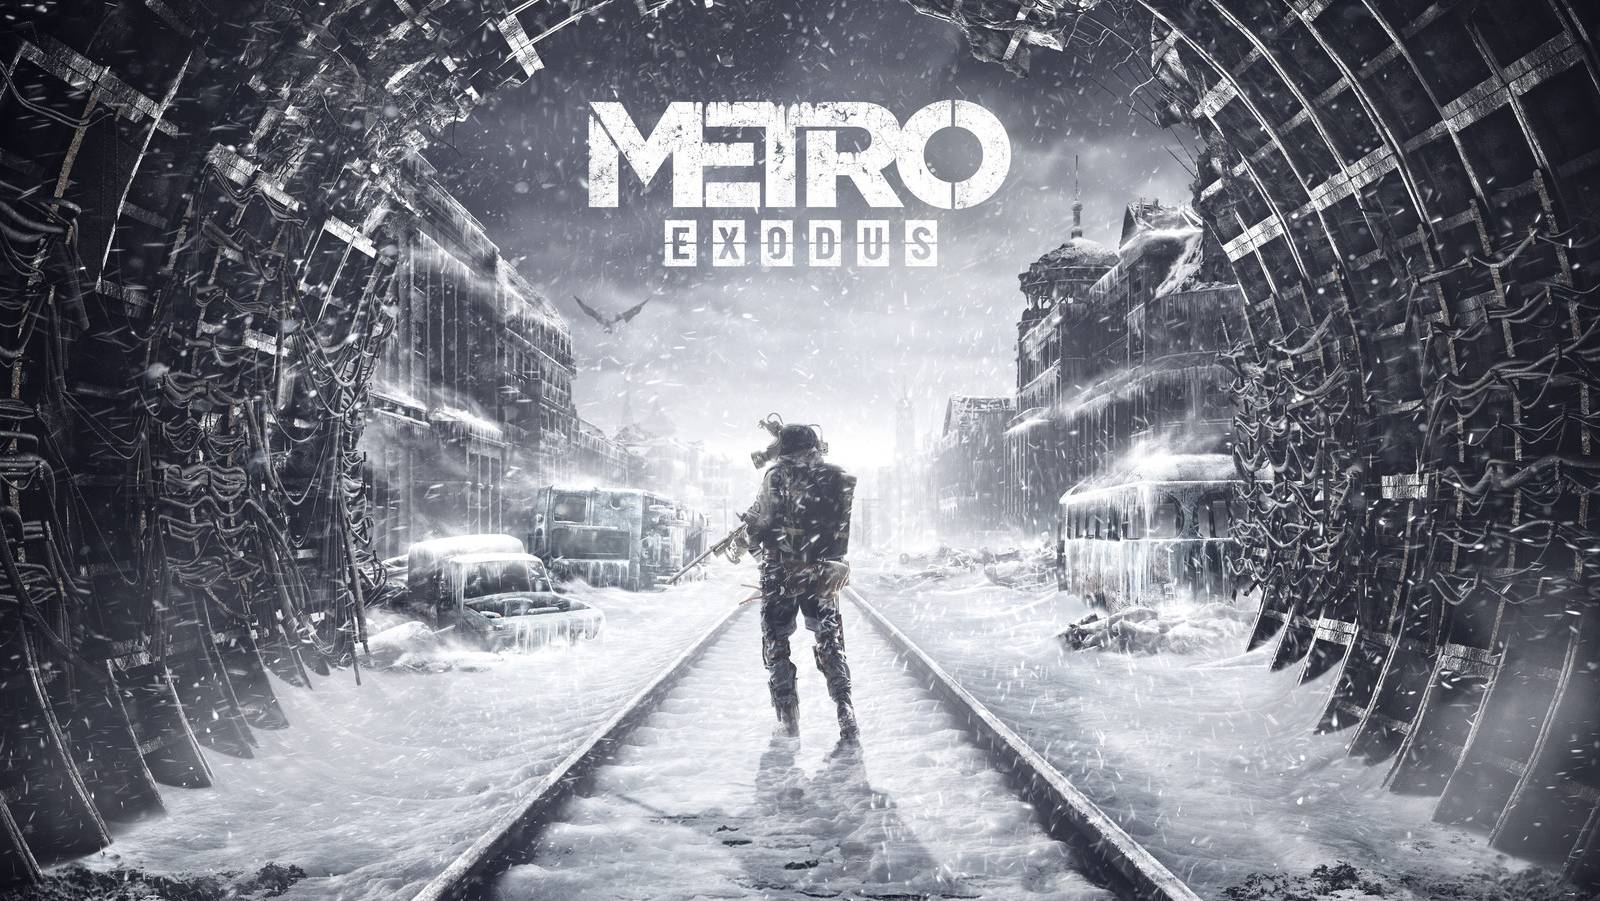 Стрим|Metro Exodus| Прохождение |Часть 9|?Ready to Game?